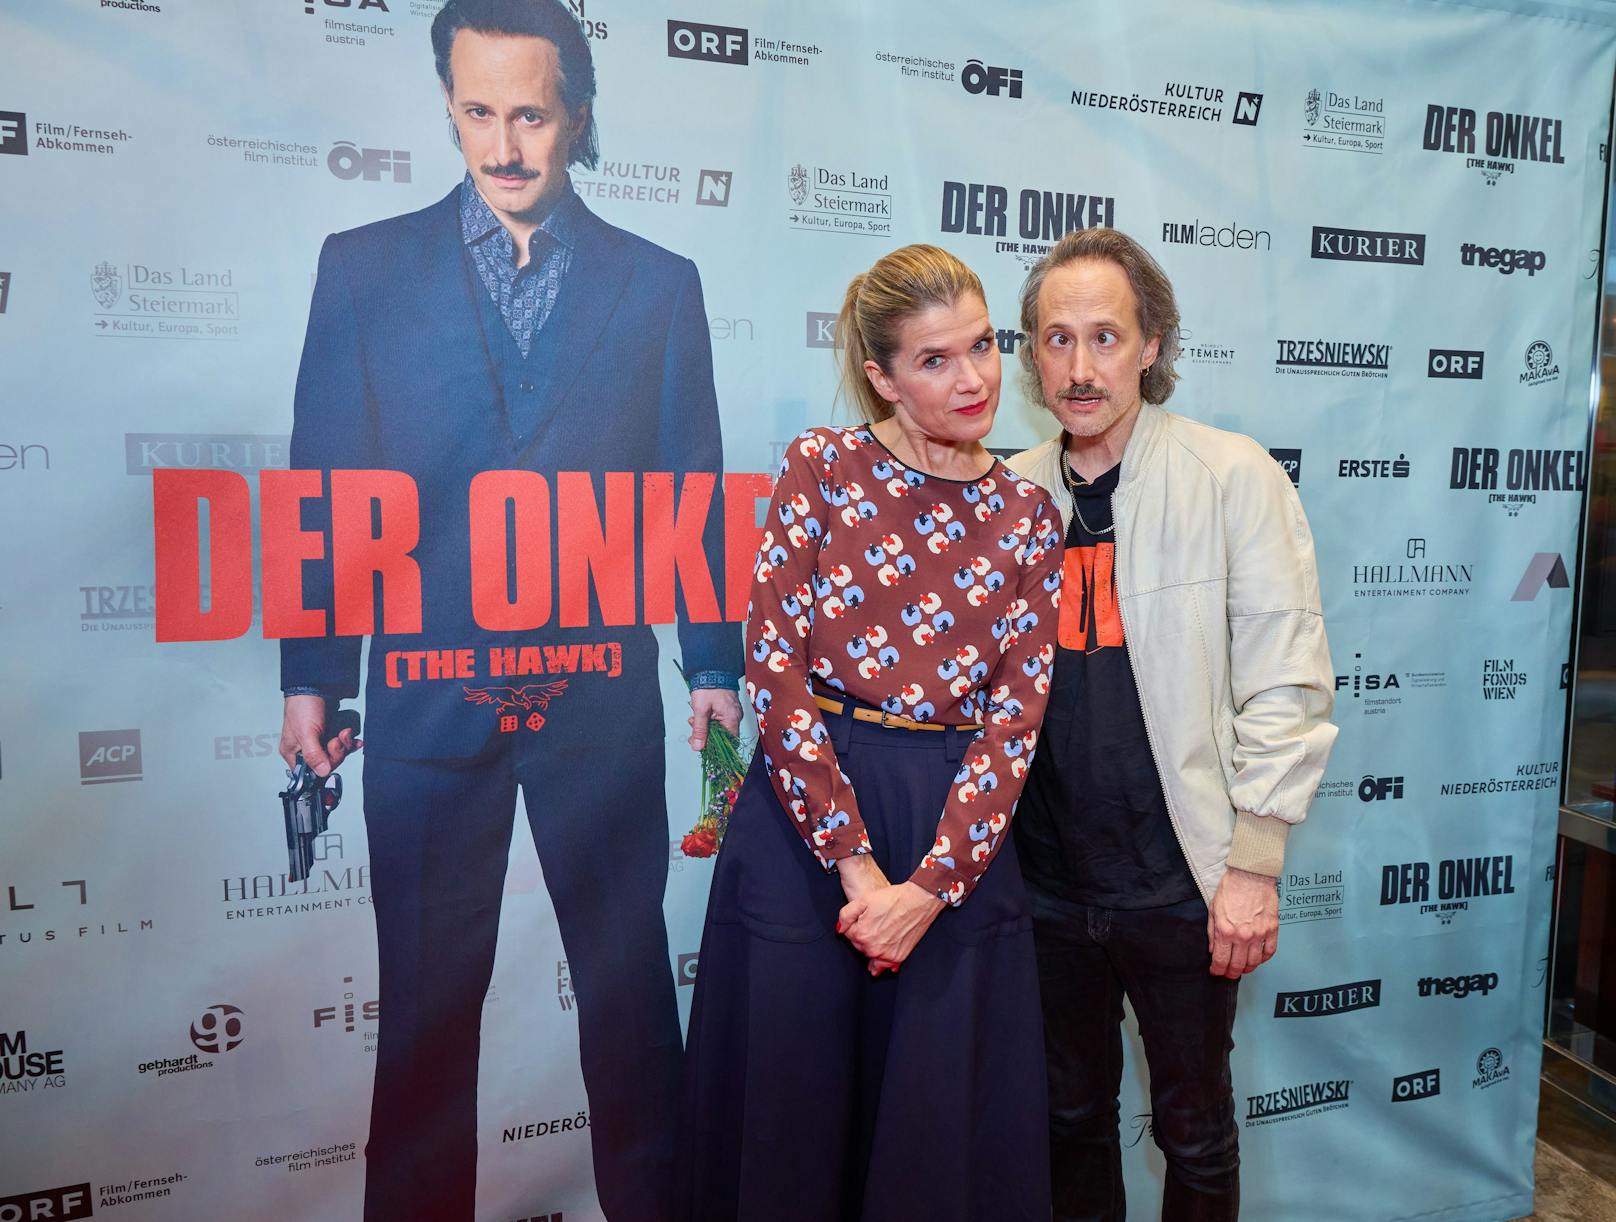 Michael Ostrowski mit Anke Engelke bei der Premiere von "Der Onkel".